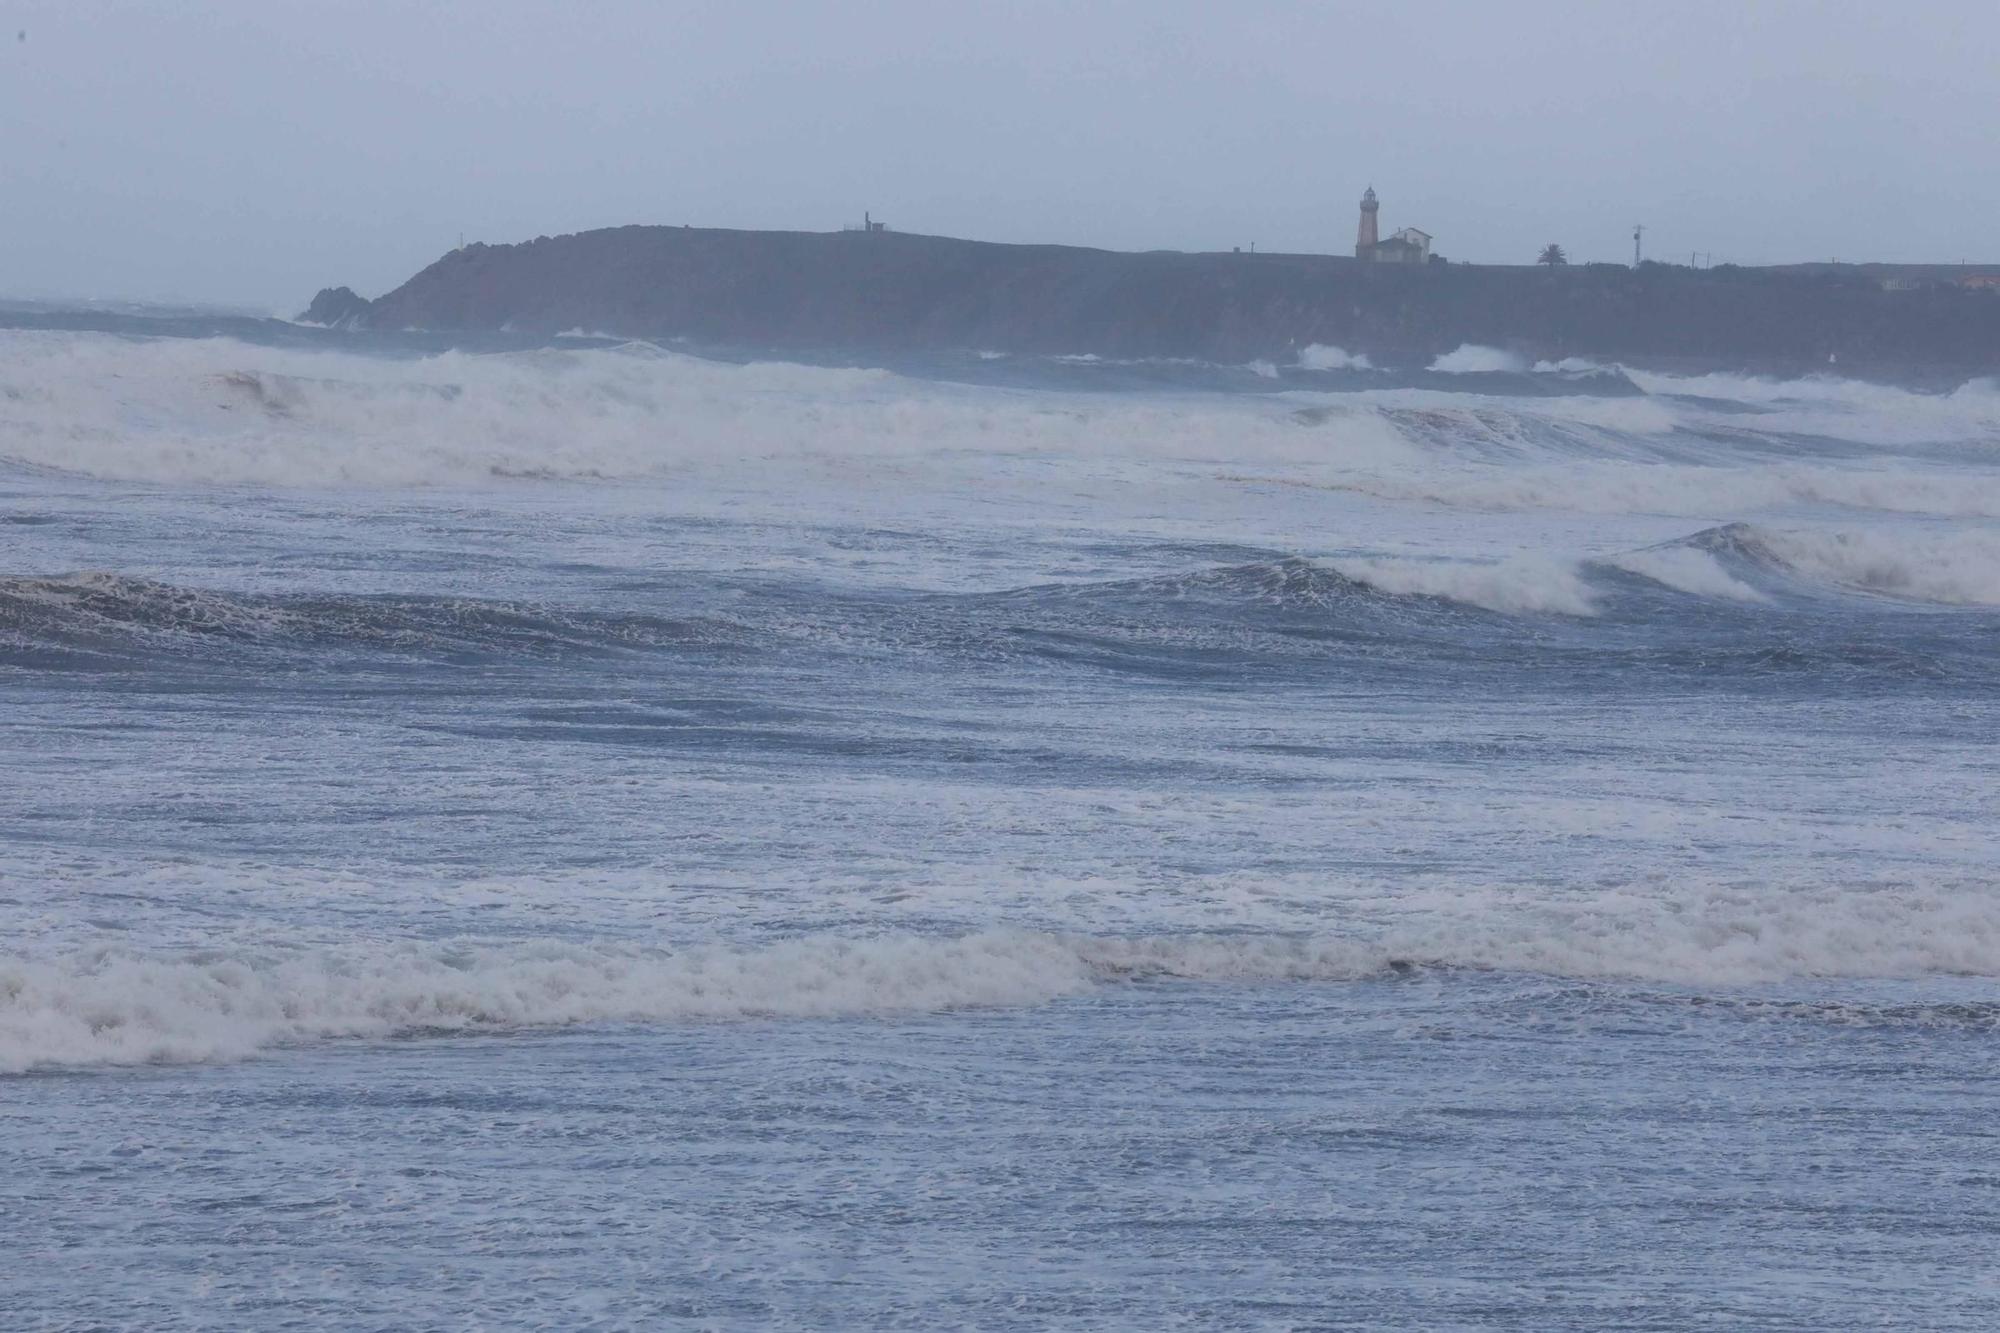 EN IMÁGENES: El temporal en la comarca de Avilés, así estaba la playa de Salinas